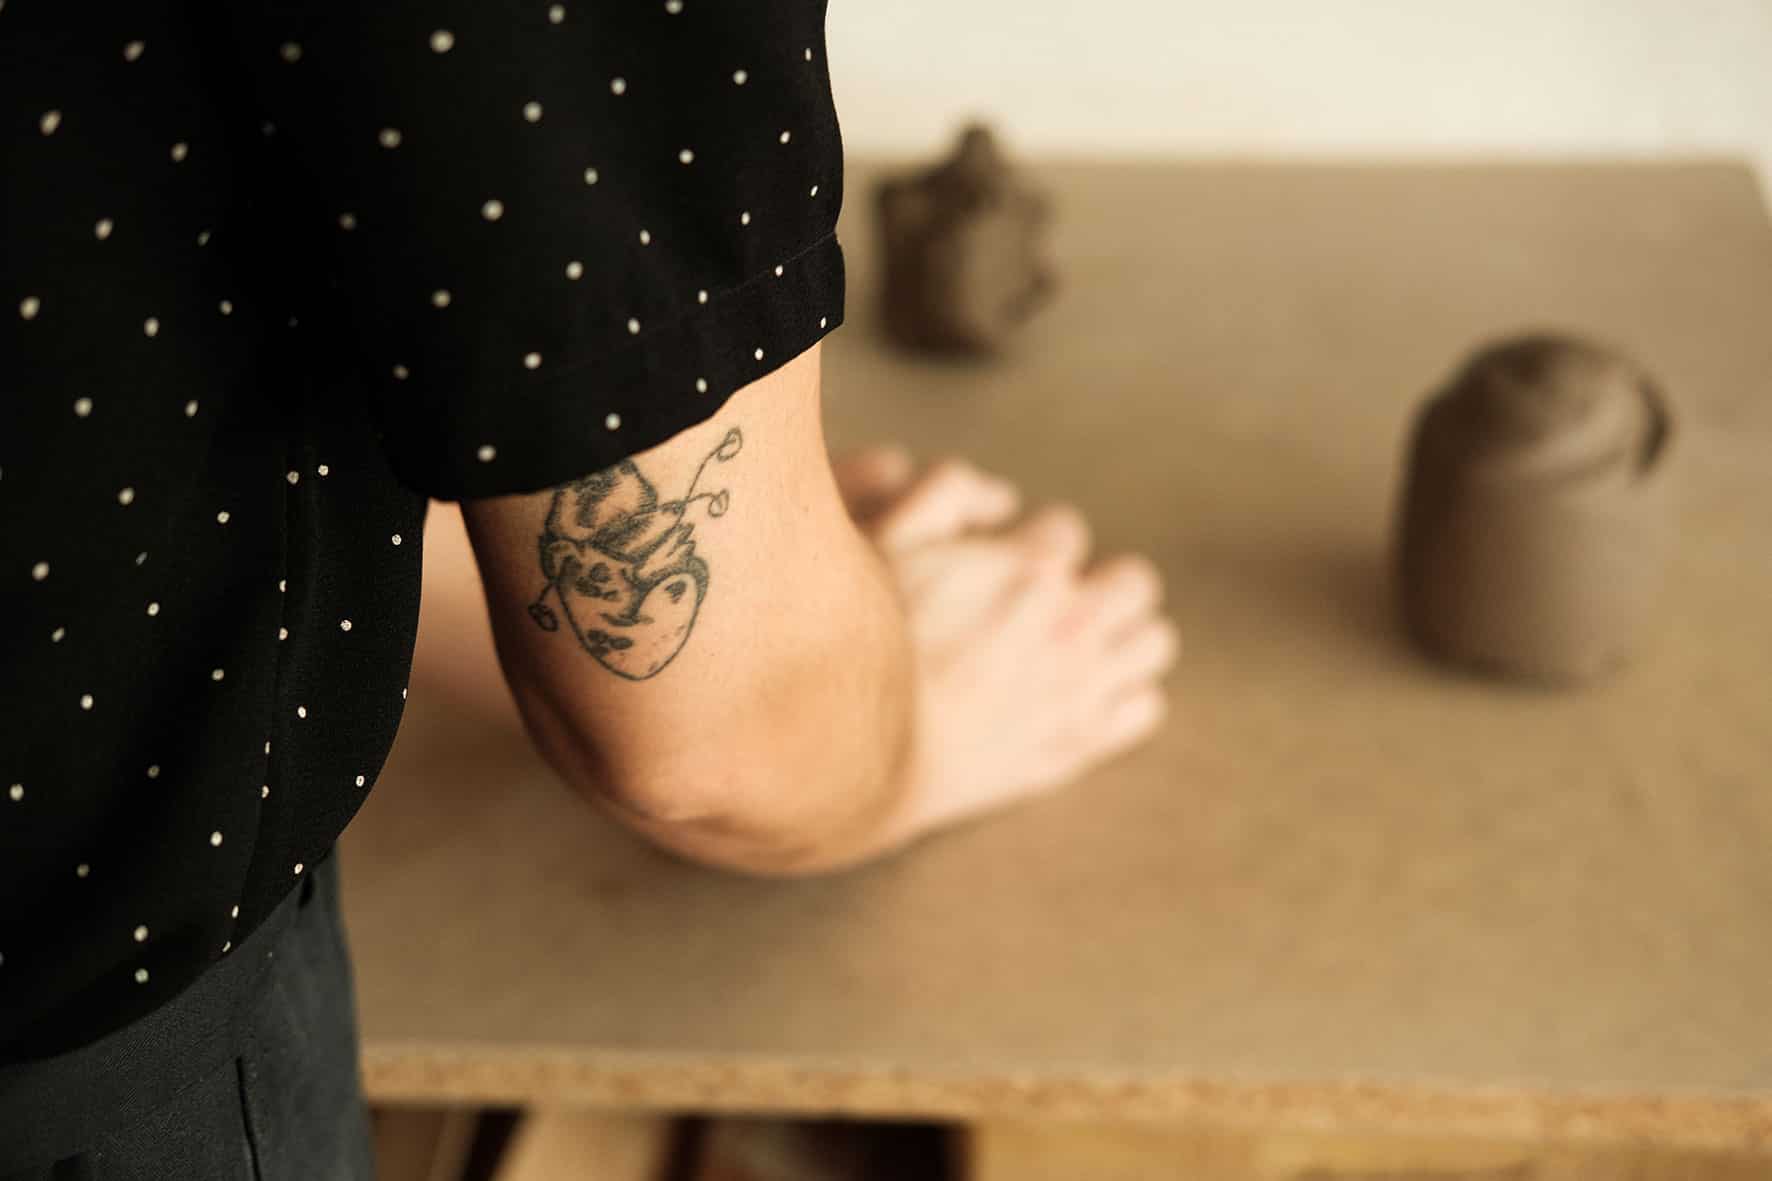 Detalhe da tatuagem no braço da ceramista, enquanto trabalha o barro.